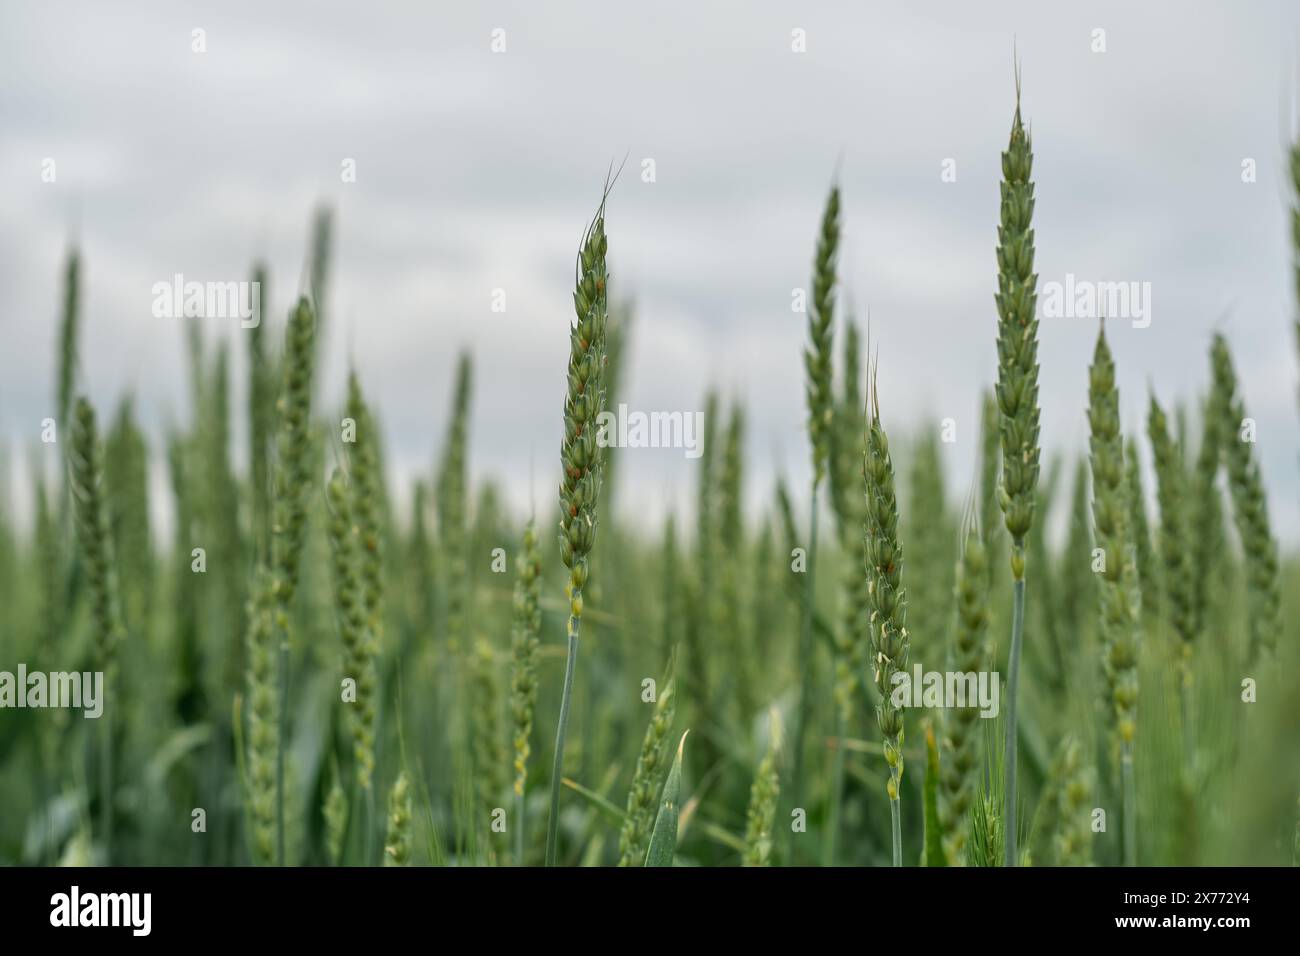 Selektiver Fokus und Nahaufnahme von Ähren von grünem Weizen bei bewölktem Wetter, was der Landschaft eine stimmungsvolle Atmosphäre verleiht, Poster über Landwirtschaft und Wachstum Stockfoto